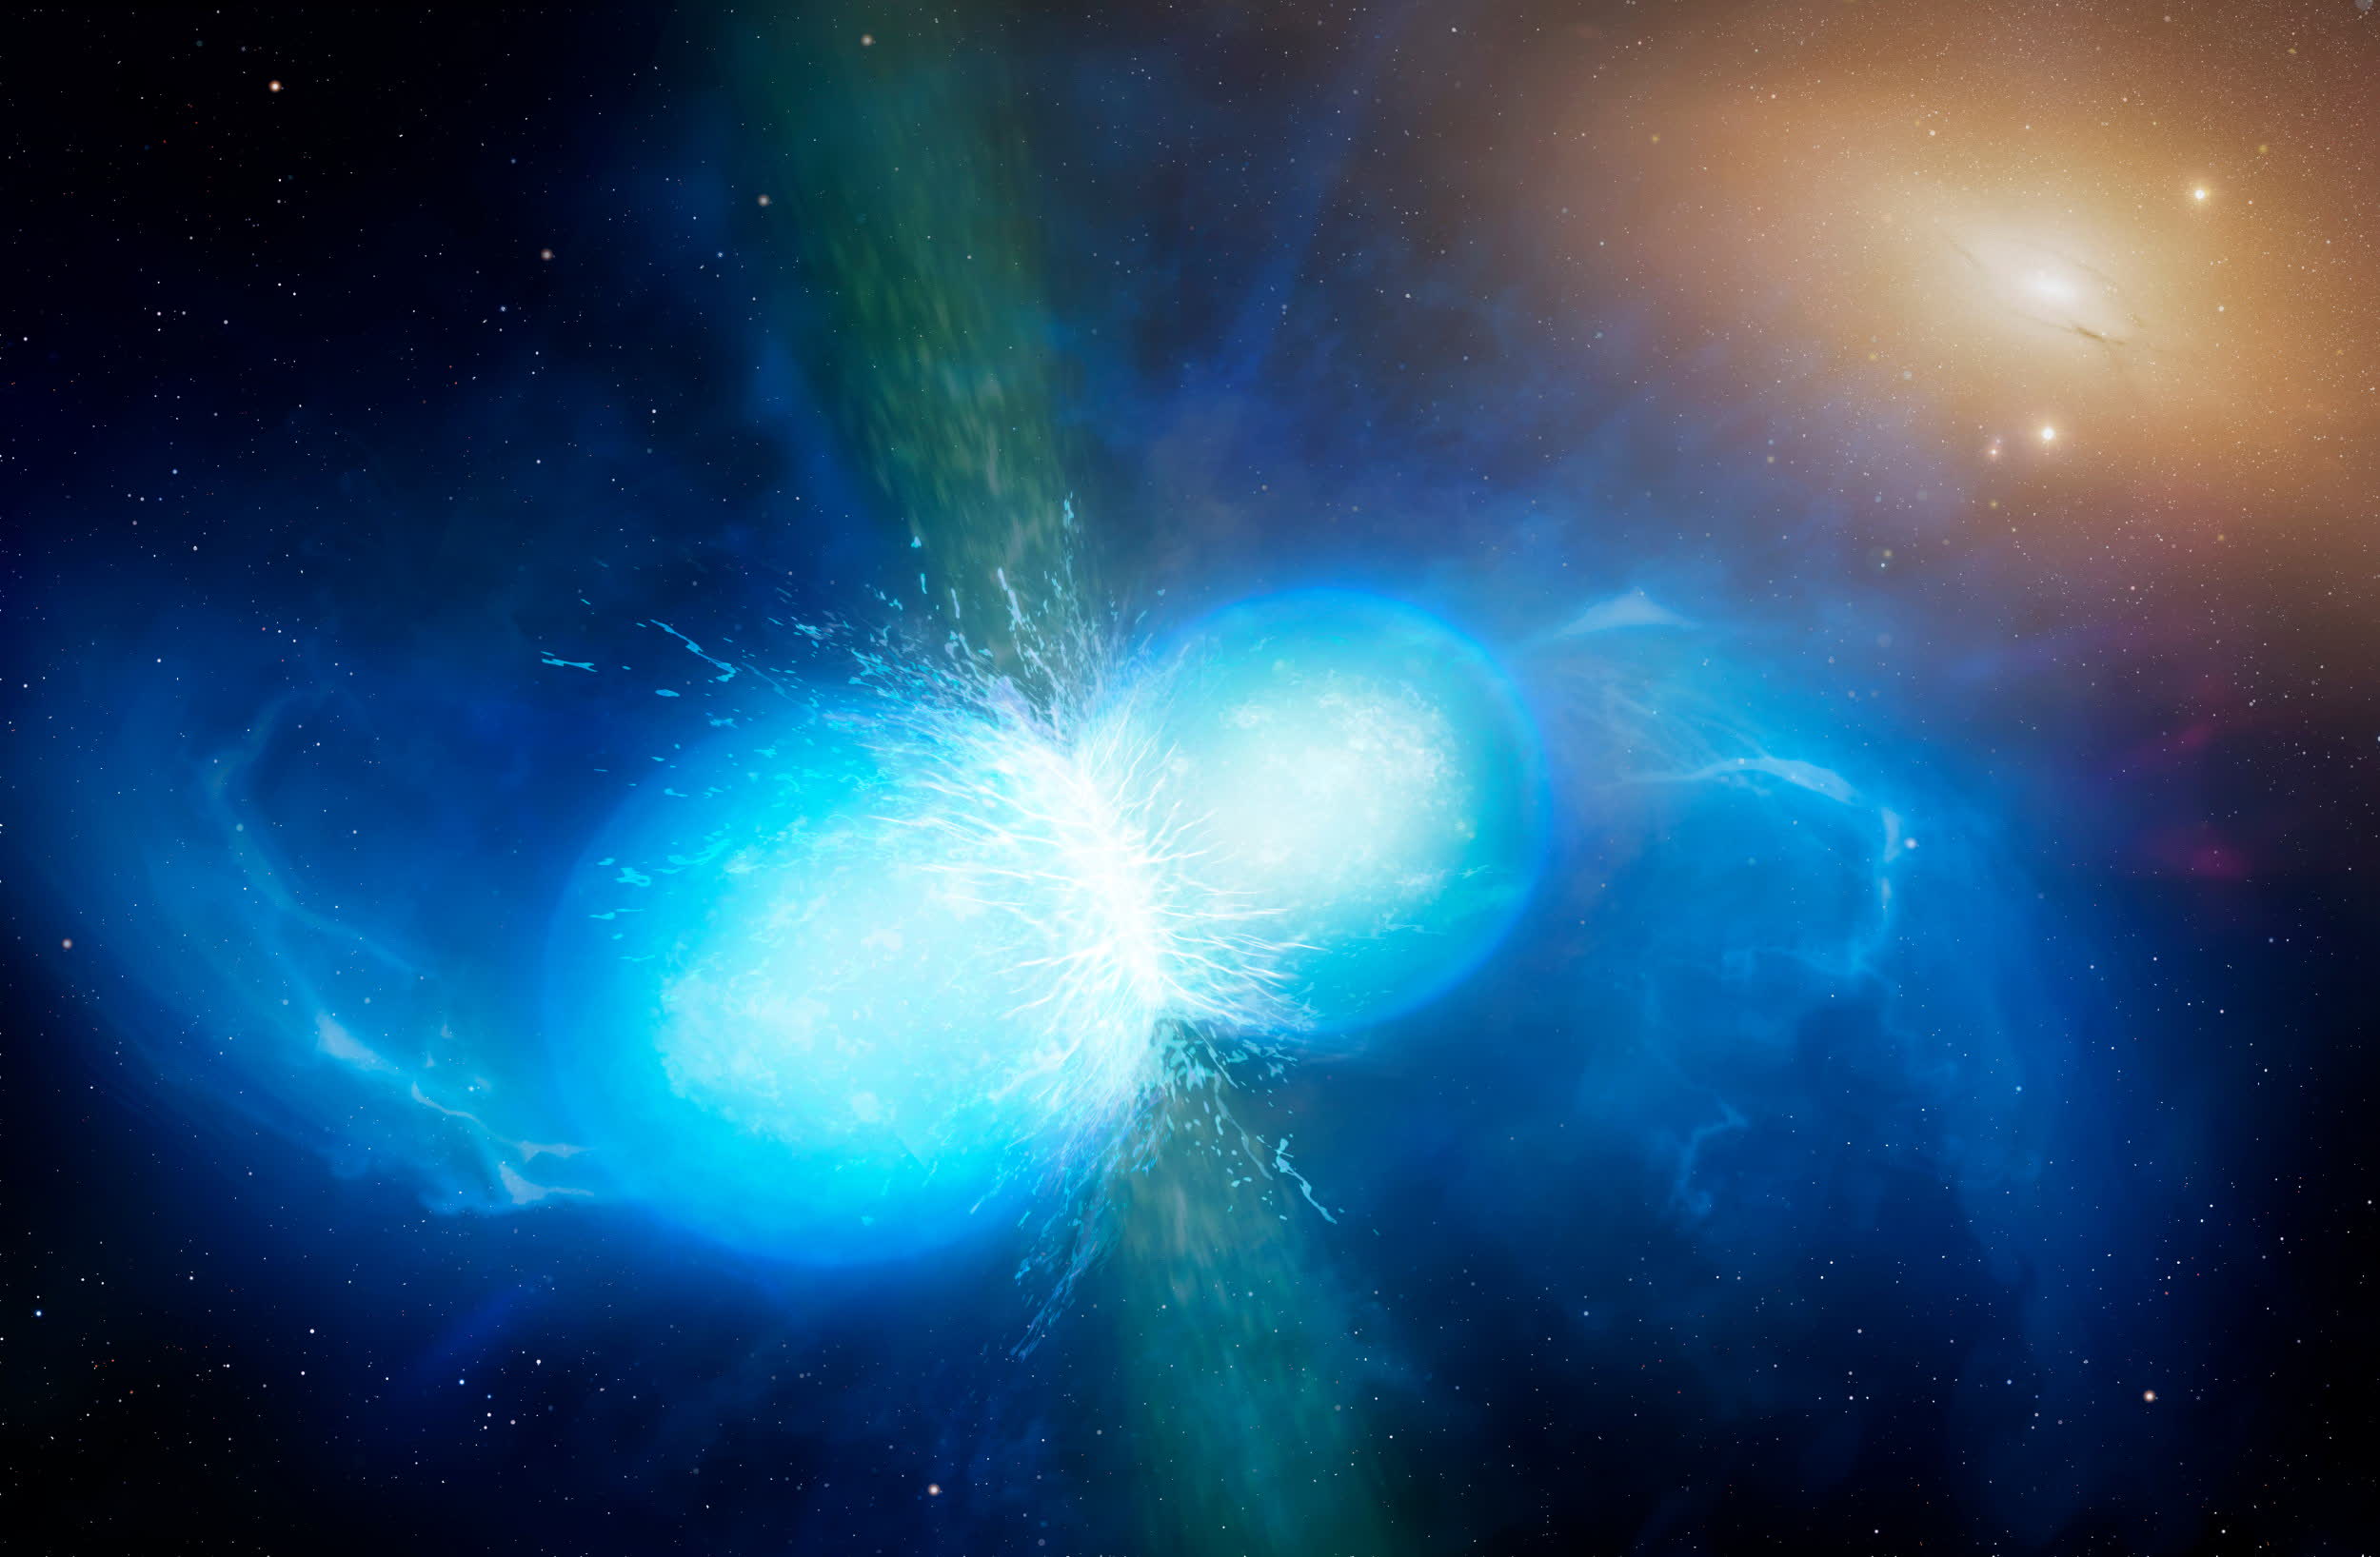 NASA's Webb telescope detects an extremely rare kilonova explosion